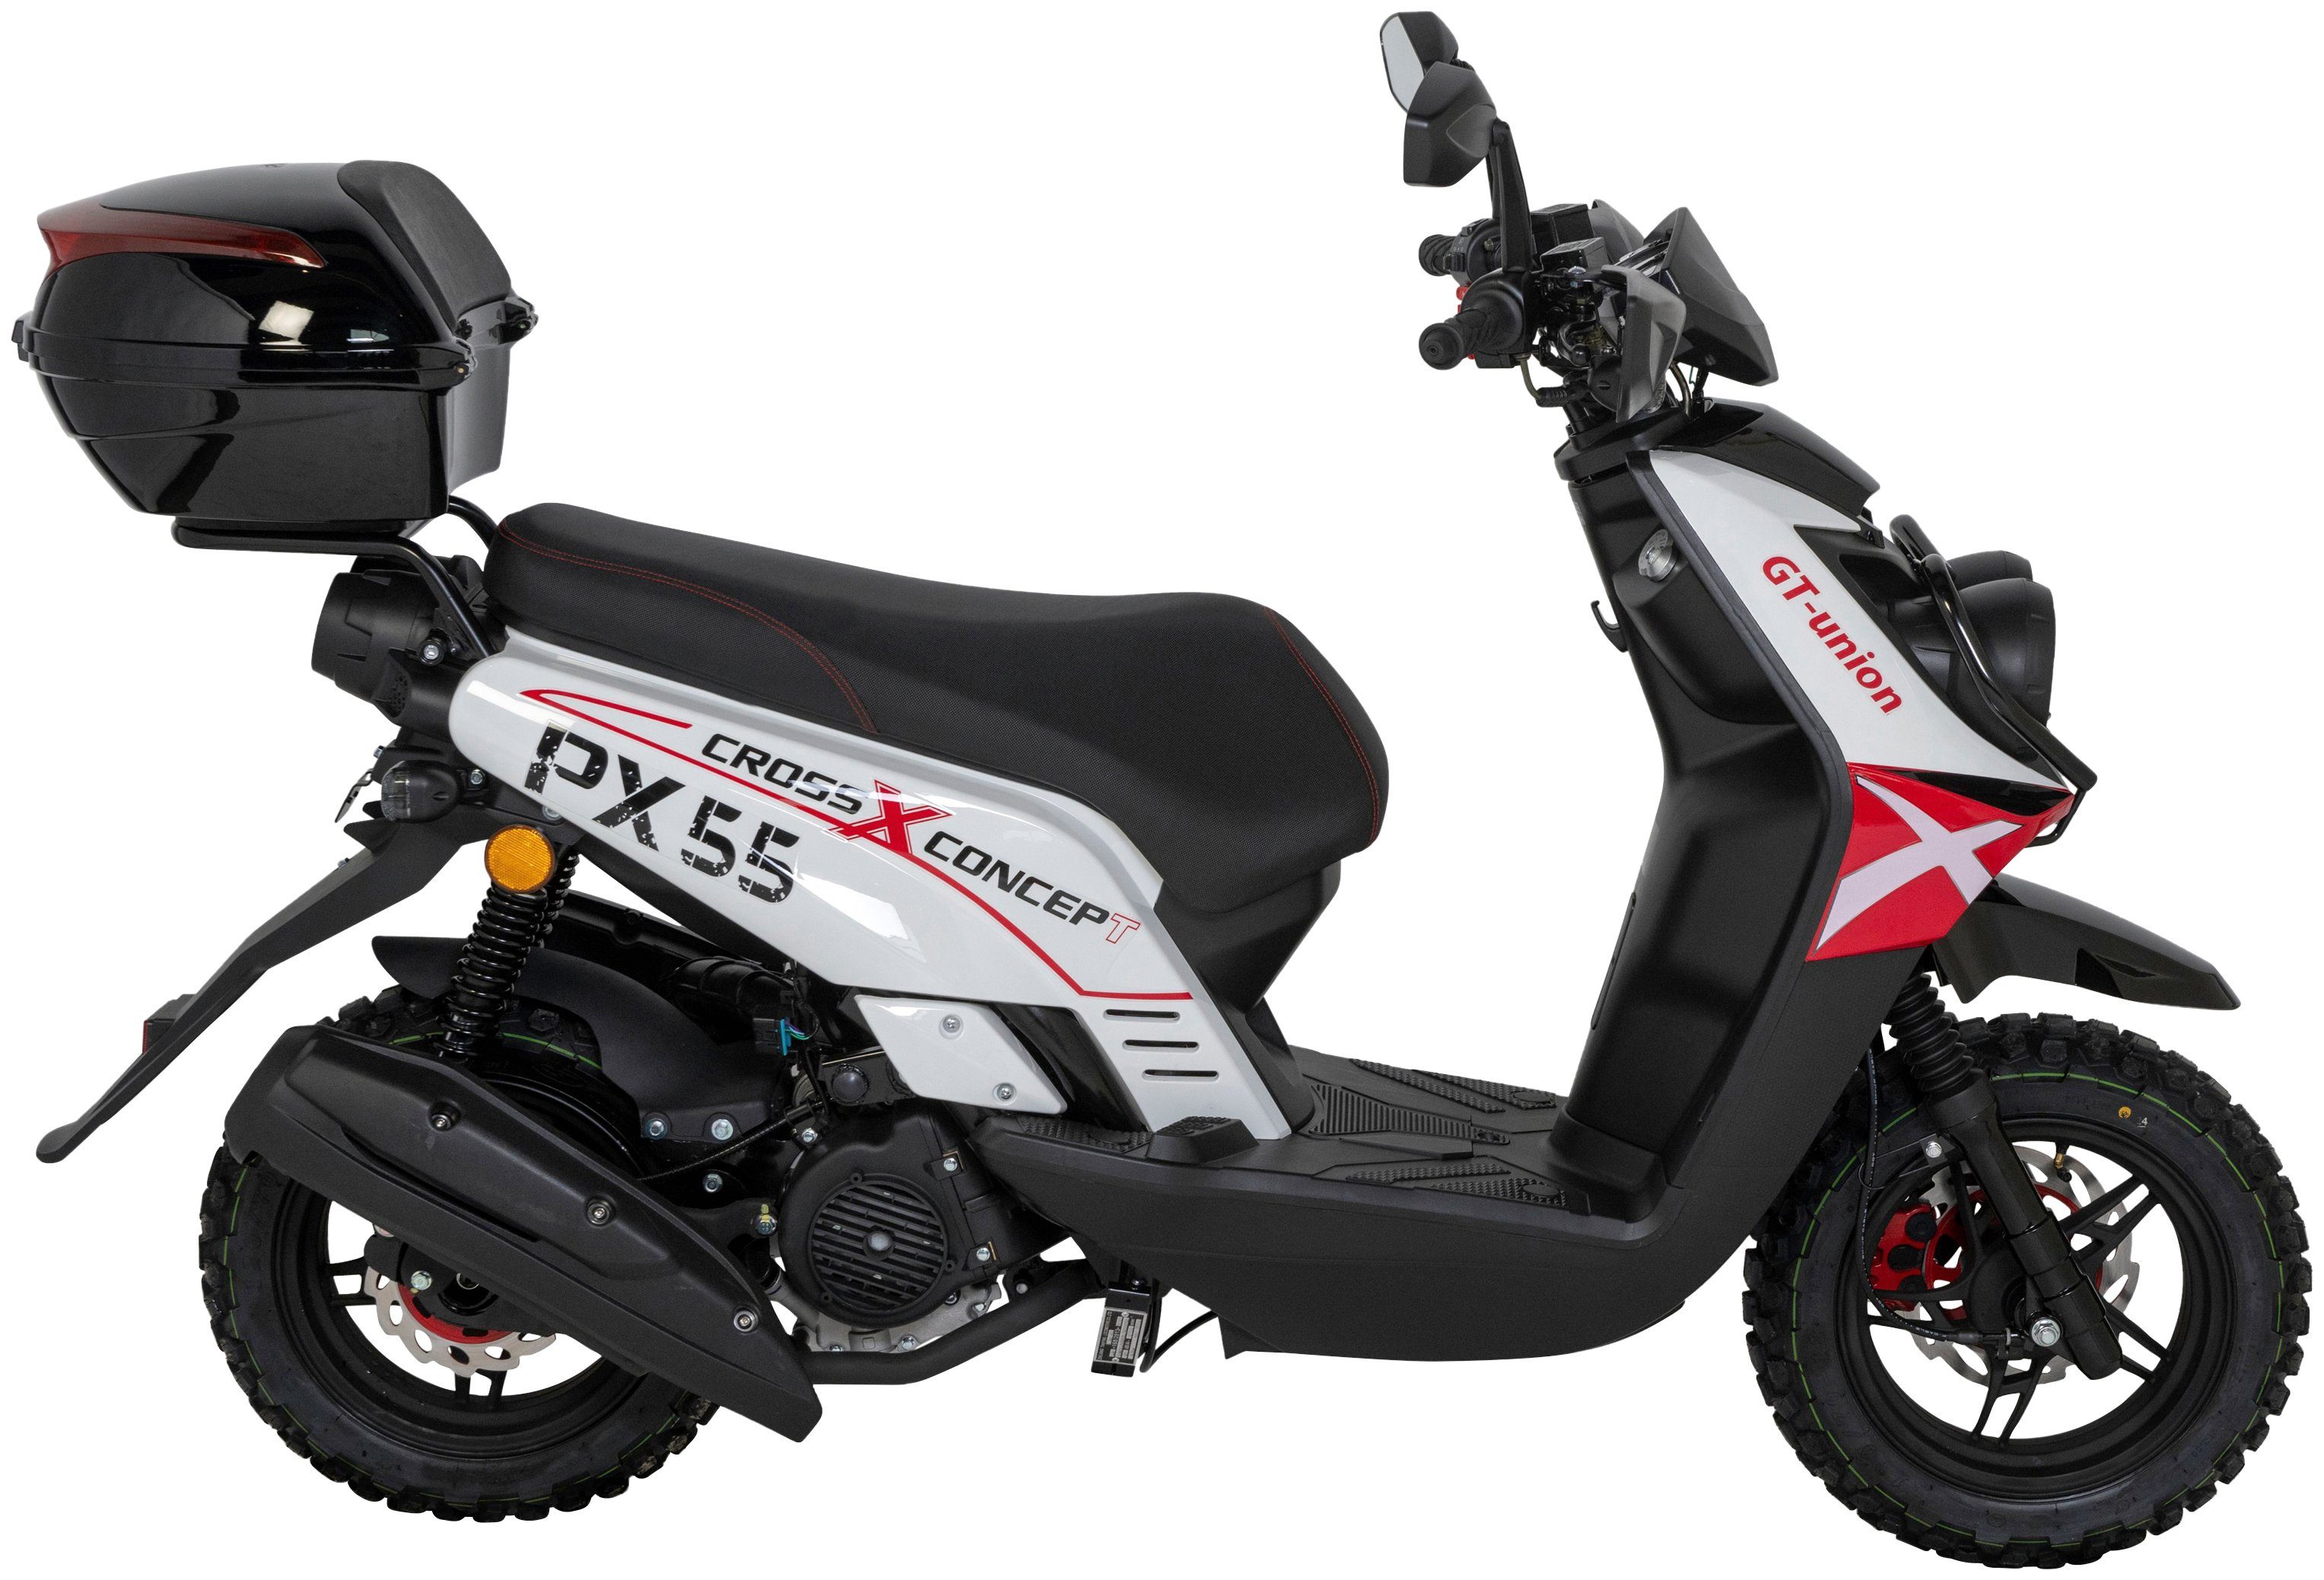 Cross-Concept, weiß/rot/schwarz 125 Topcase km/h, Motorroller GT mit PX UNION ccm, 55 (Set), 5, 85 Euro